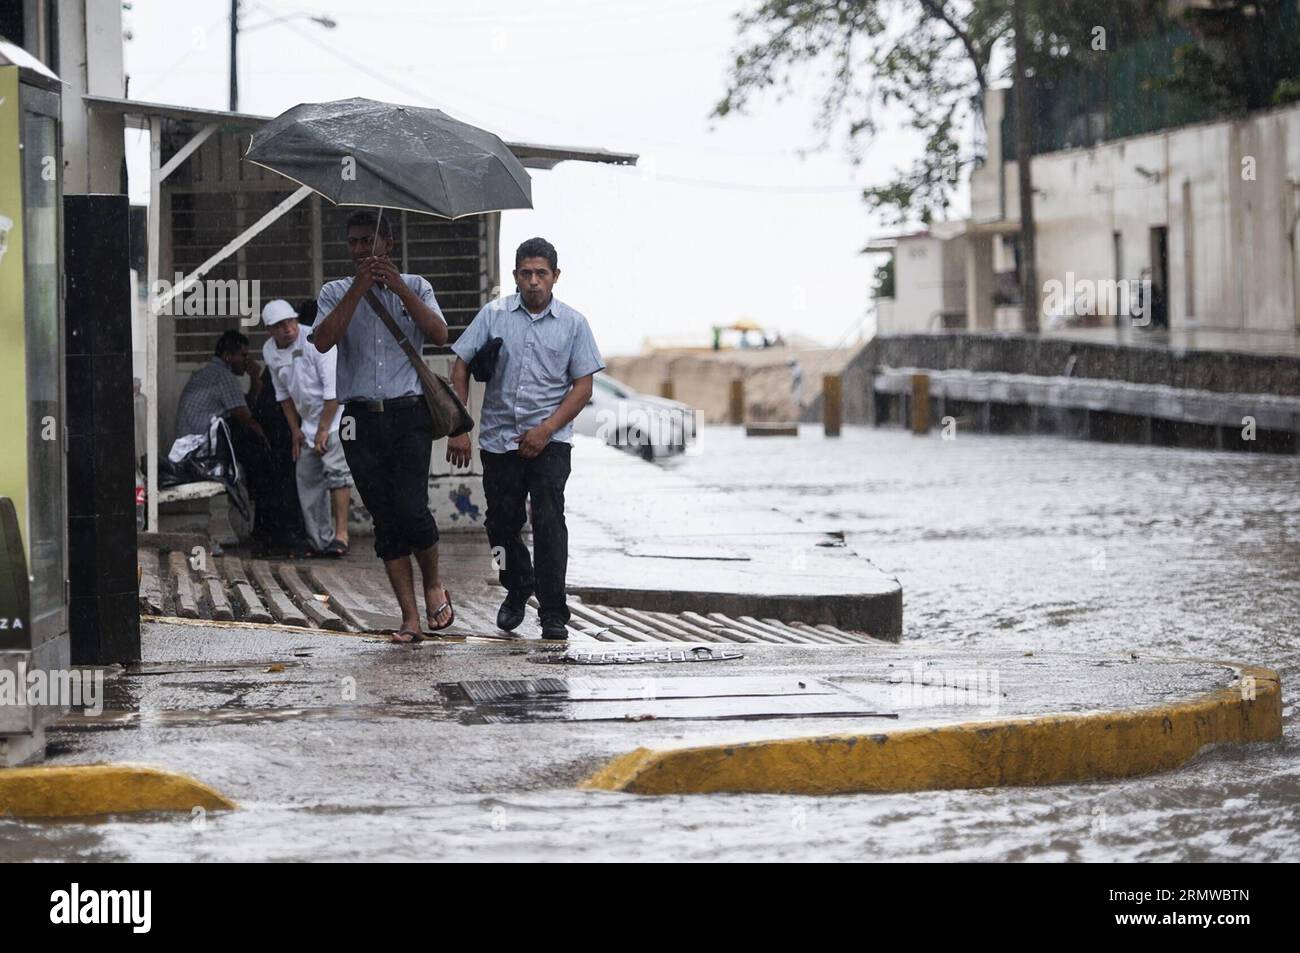 Un uomo tiene un ombrello sotto la pioggia, a Acapulco Port, Guerrero, Messico, il 19 ottobre, 2014. l'intensa pioggia generata dalla tempesta tropicale Trudy ha causato la morte di sette persone nello stato meridionale di Guerrero, informato dalla protezione civile di domenica. ) (wxl) MESSICO-GUERRERO-AMBIENTE-CLIMA JesusxEspinosa PUBLICATIONxNOTxINxCHN un uomo tiene a ombrello attraverso la pioggia ad Acapulco, Messico Port Guerrero Messico IL 19 ottobre 2014 l'intensa pioggia generata dalla tempesta tropicale Trudy ha lasciato sette celebrità morte nello Stato meridionale di Guerrero informata dalla protezione civile domenica Mexic Foto Stock